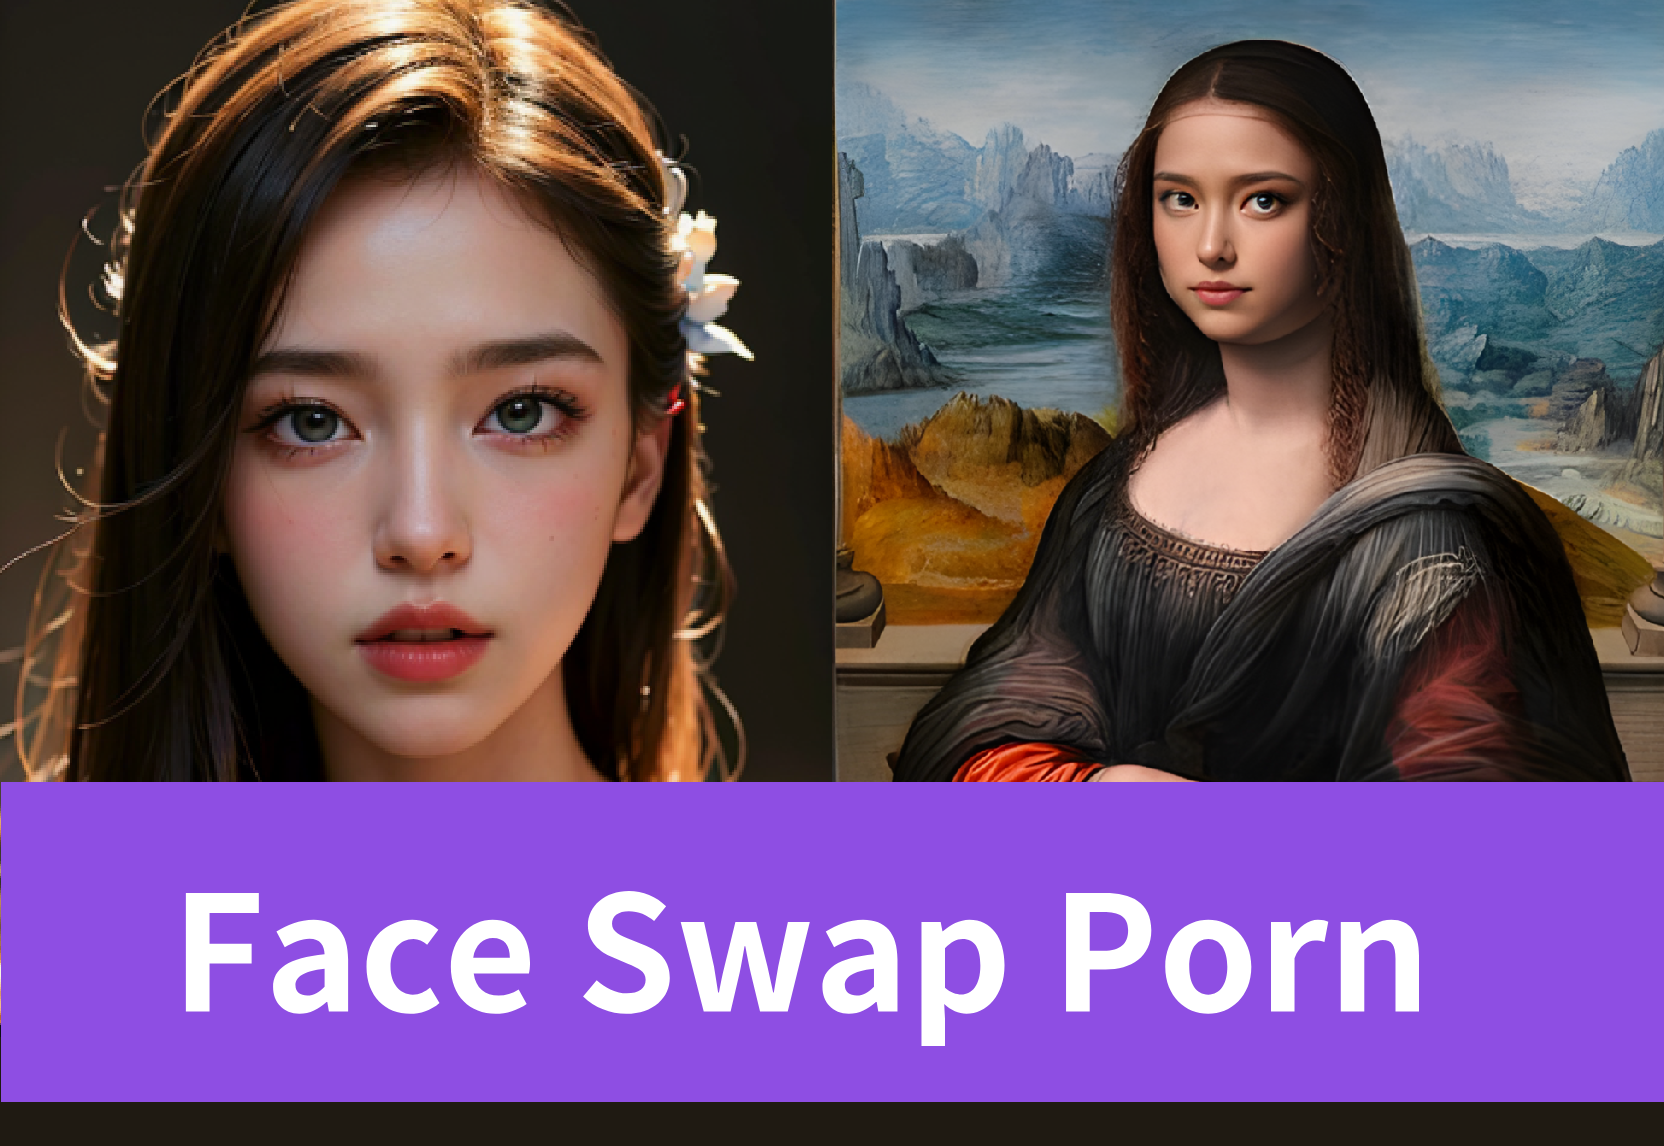 Face Swap Porn: Ultimate Guide to Create AI Face Swap Generator